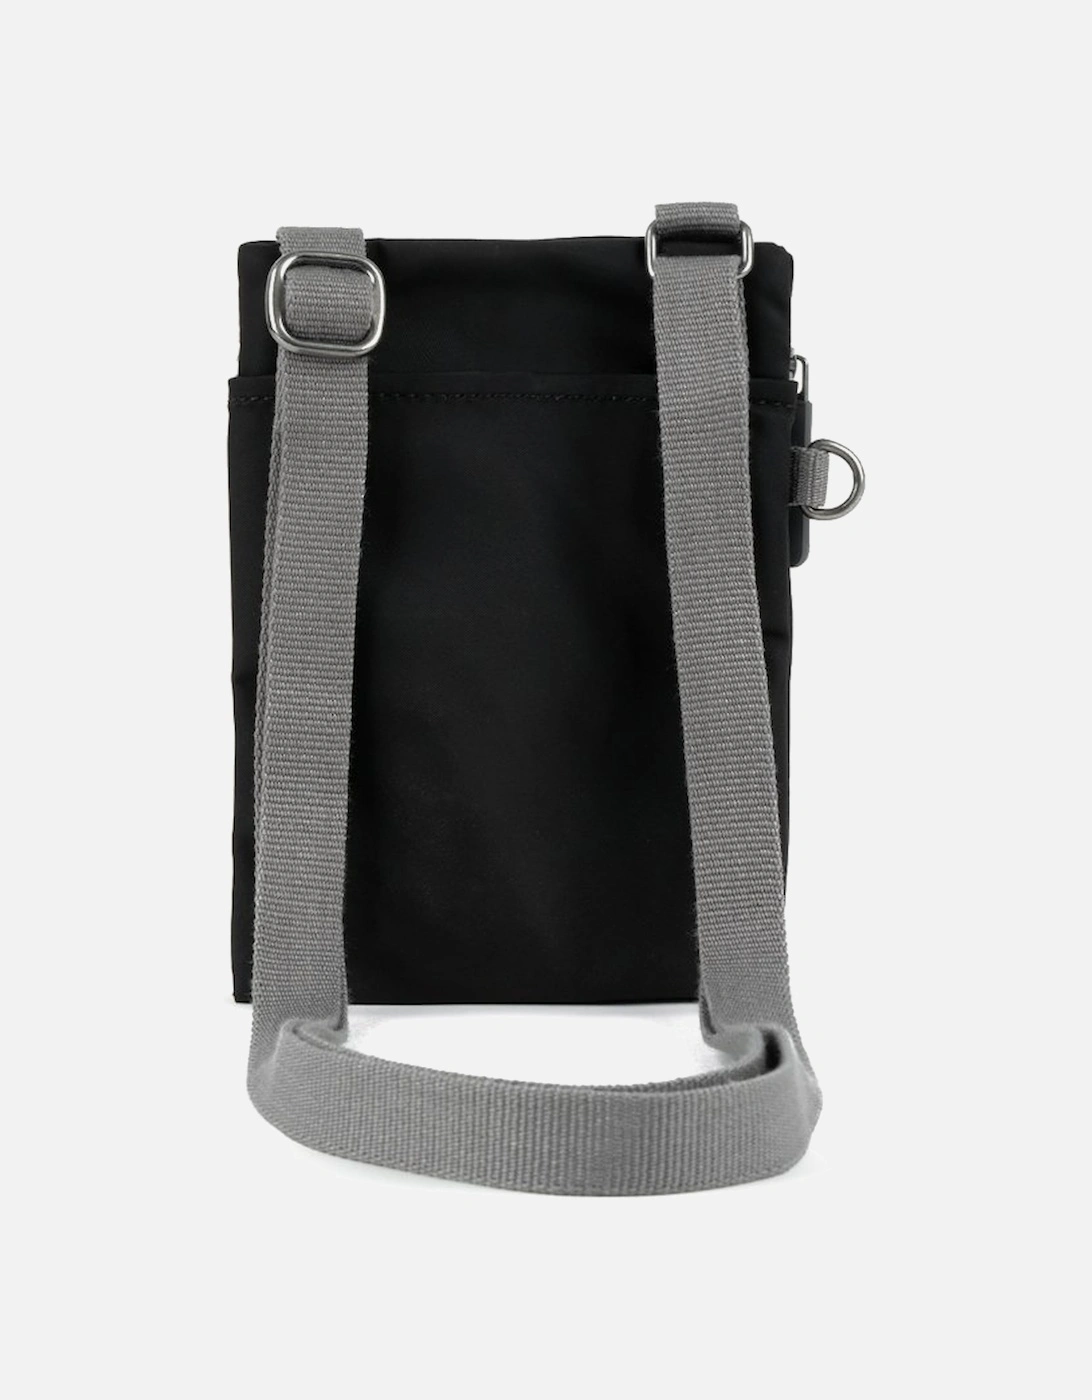 Chelsea Pocket X Bag